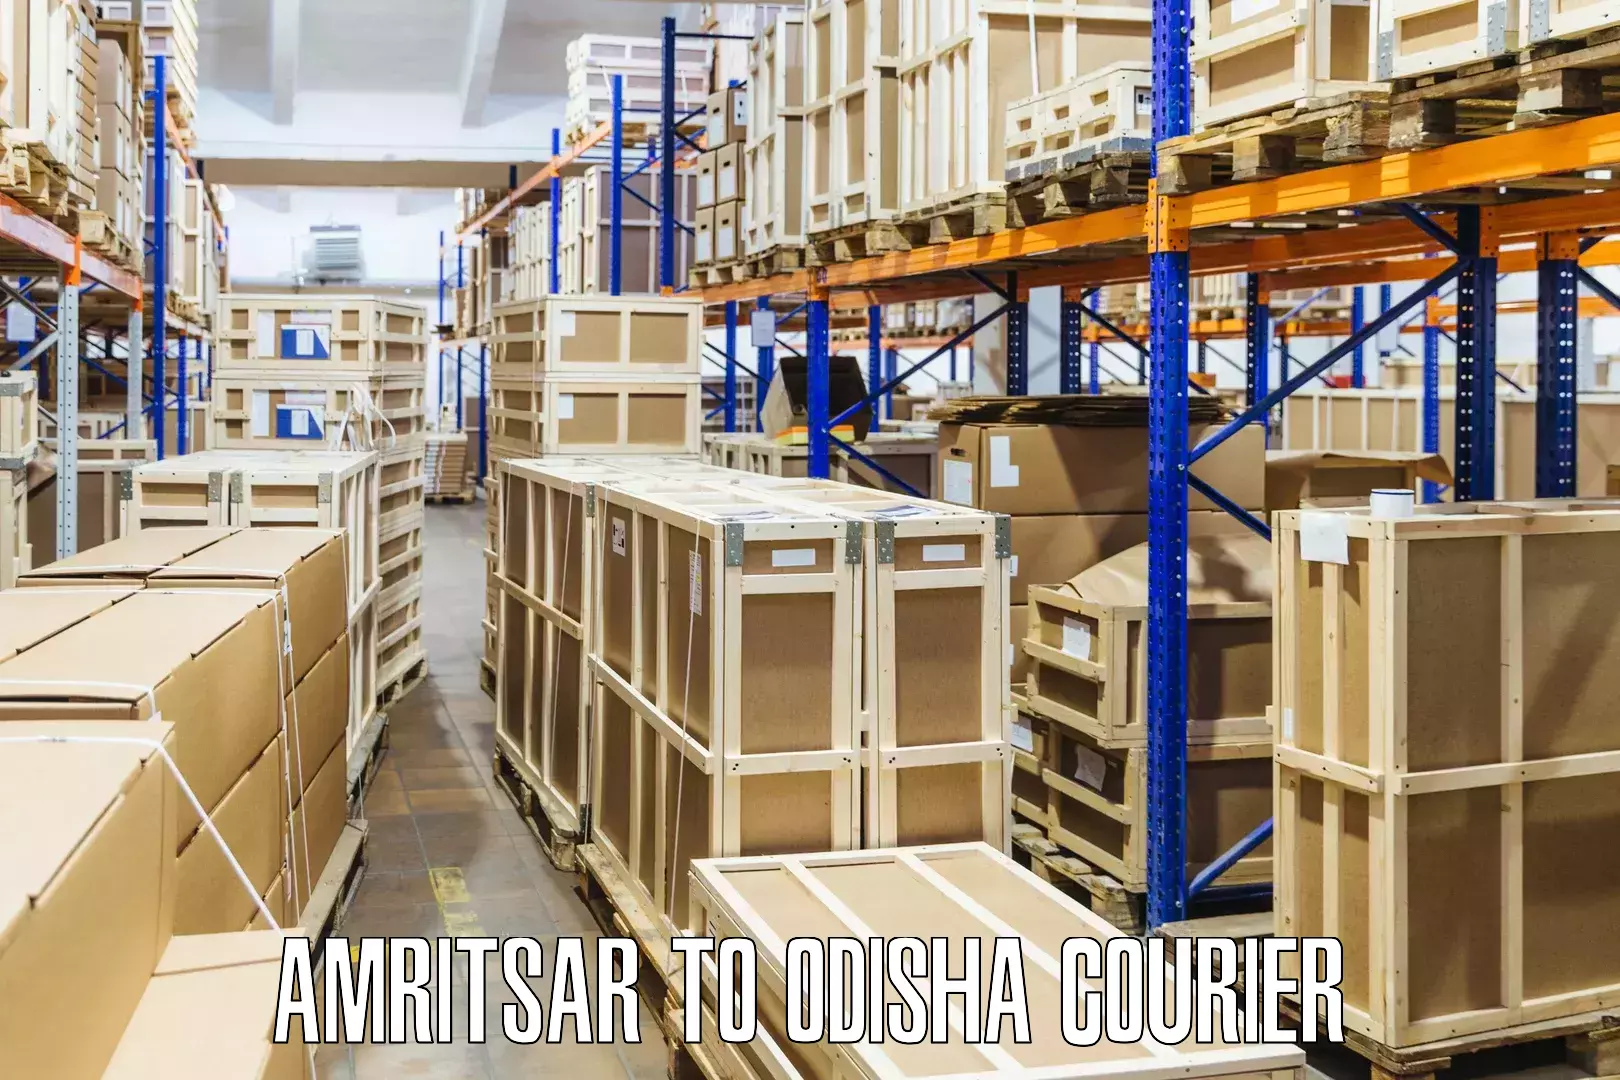 Flexible courier rates Amritsar to Daspalla